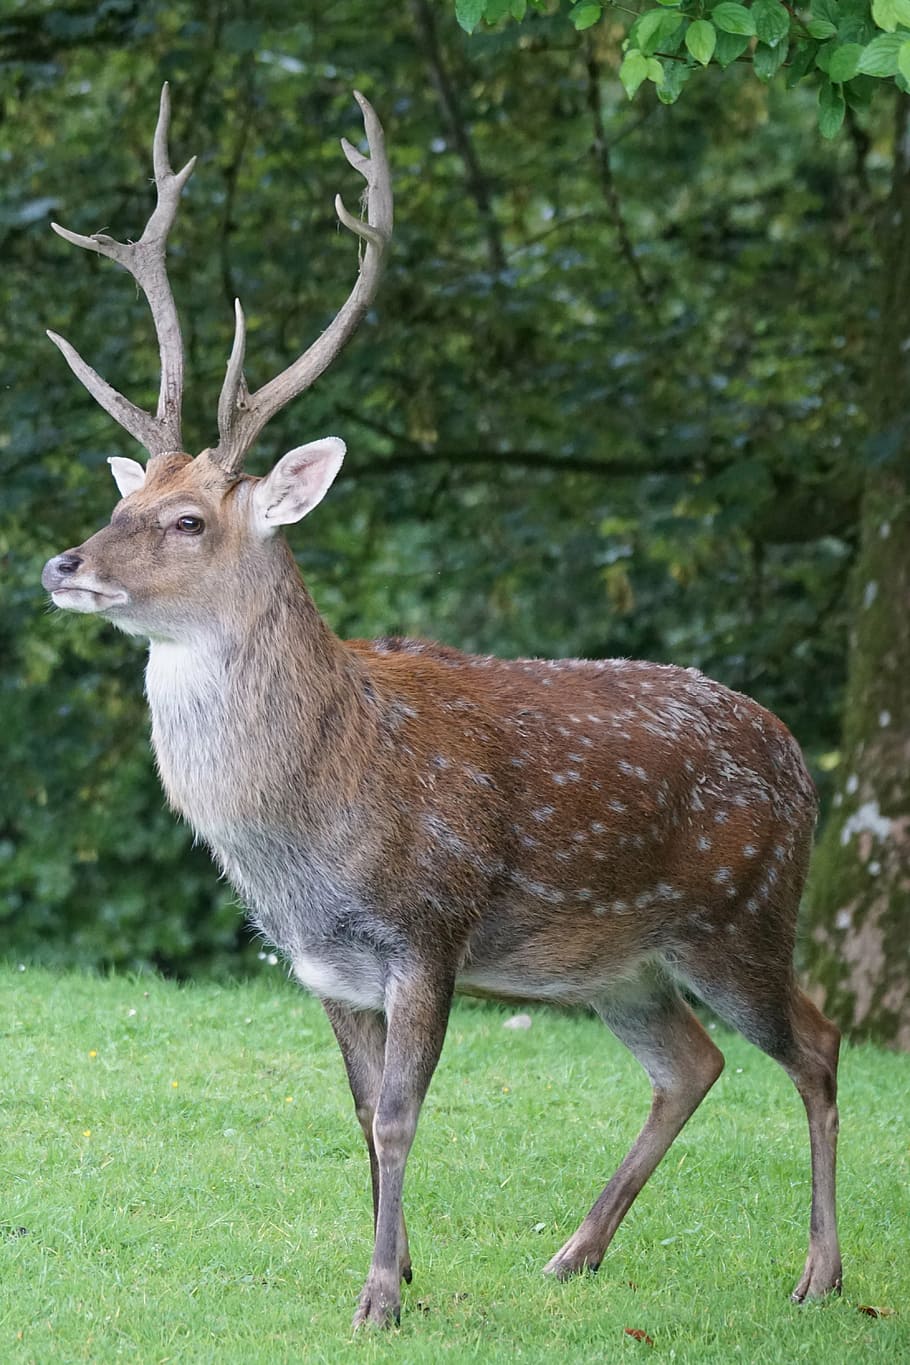 brown, deer, standing, green, grass, sika deer, hirsch, platzhirsch, mammal, attention